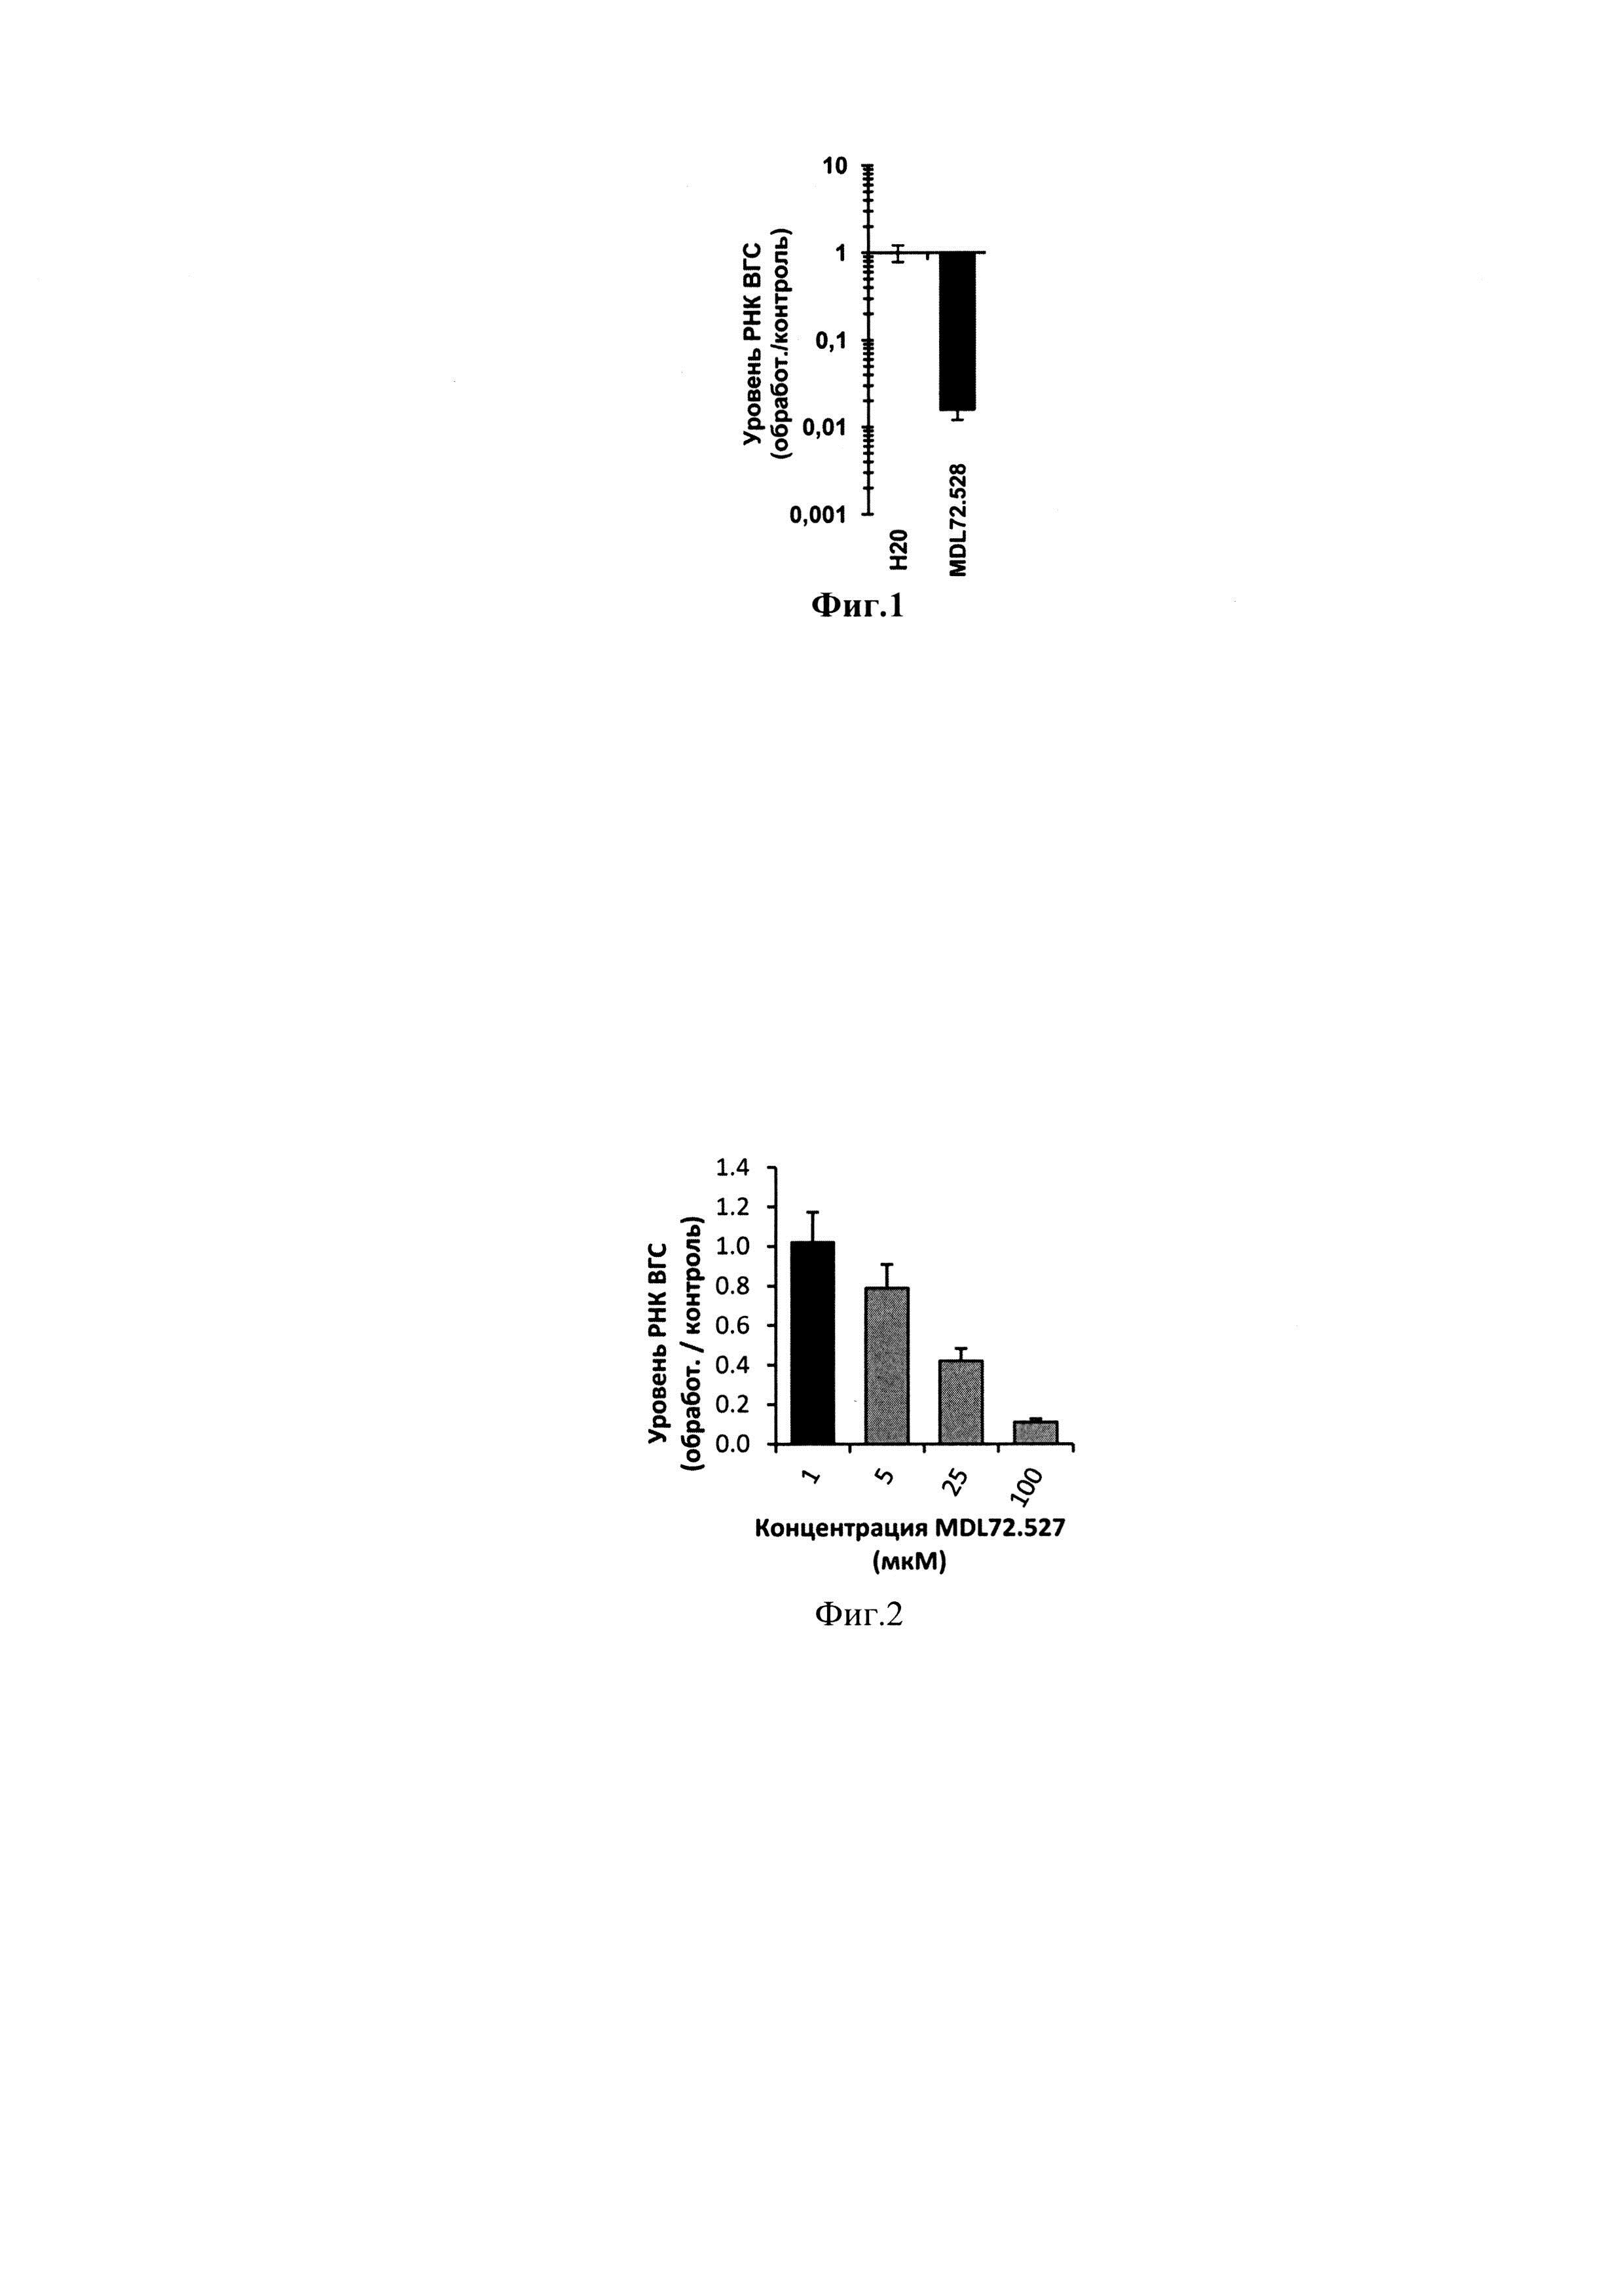 Способ применения дигидрохлорида N,N’-бис-(2,3-бутадиенил)-1,4-диаминобутана (MDL72.527) для подавления репродукции вируса гепатита С